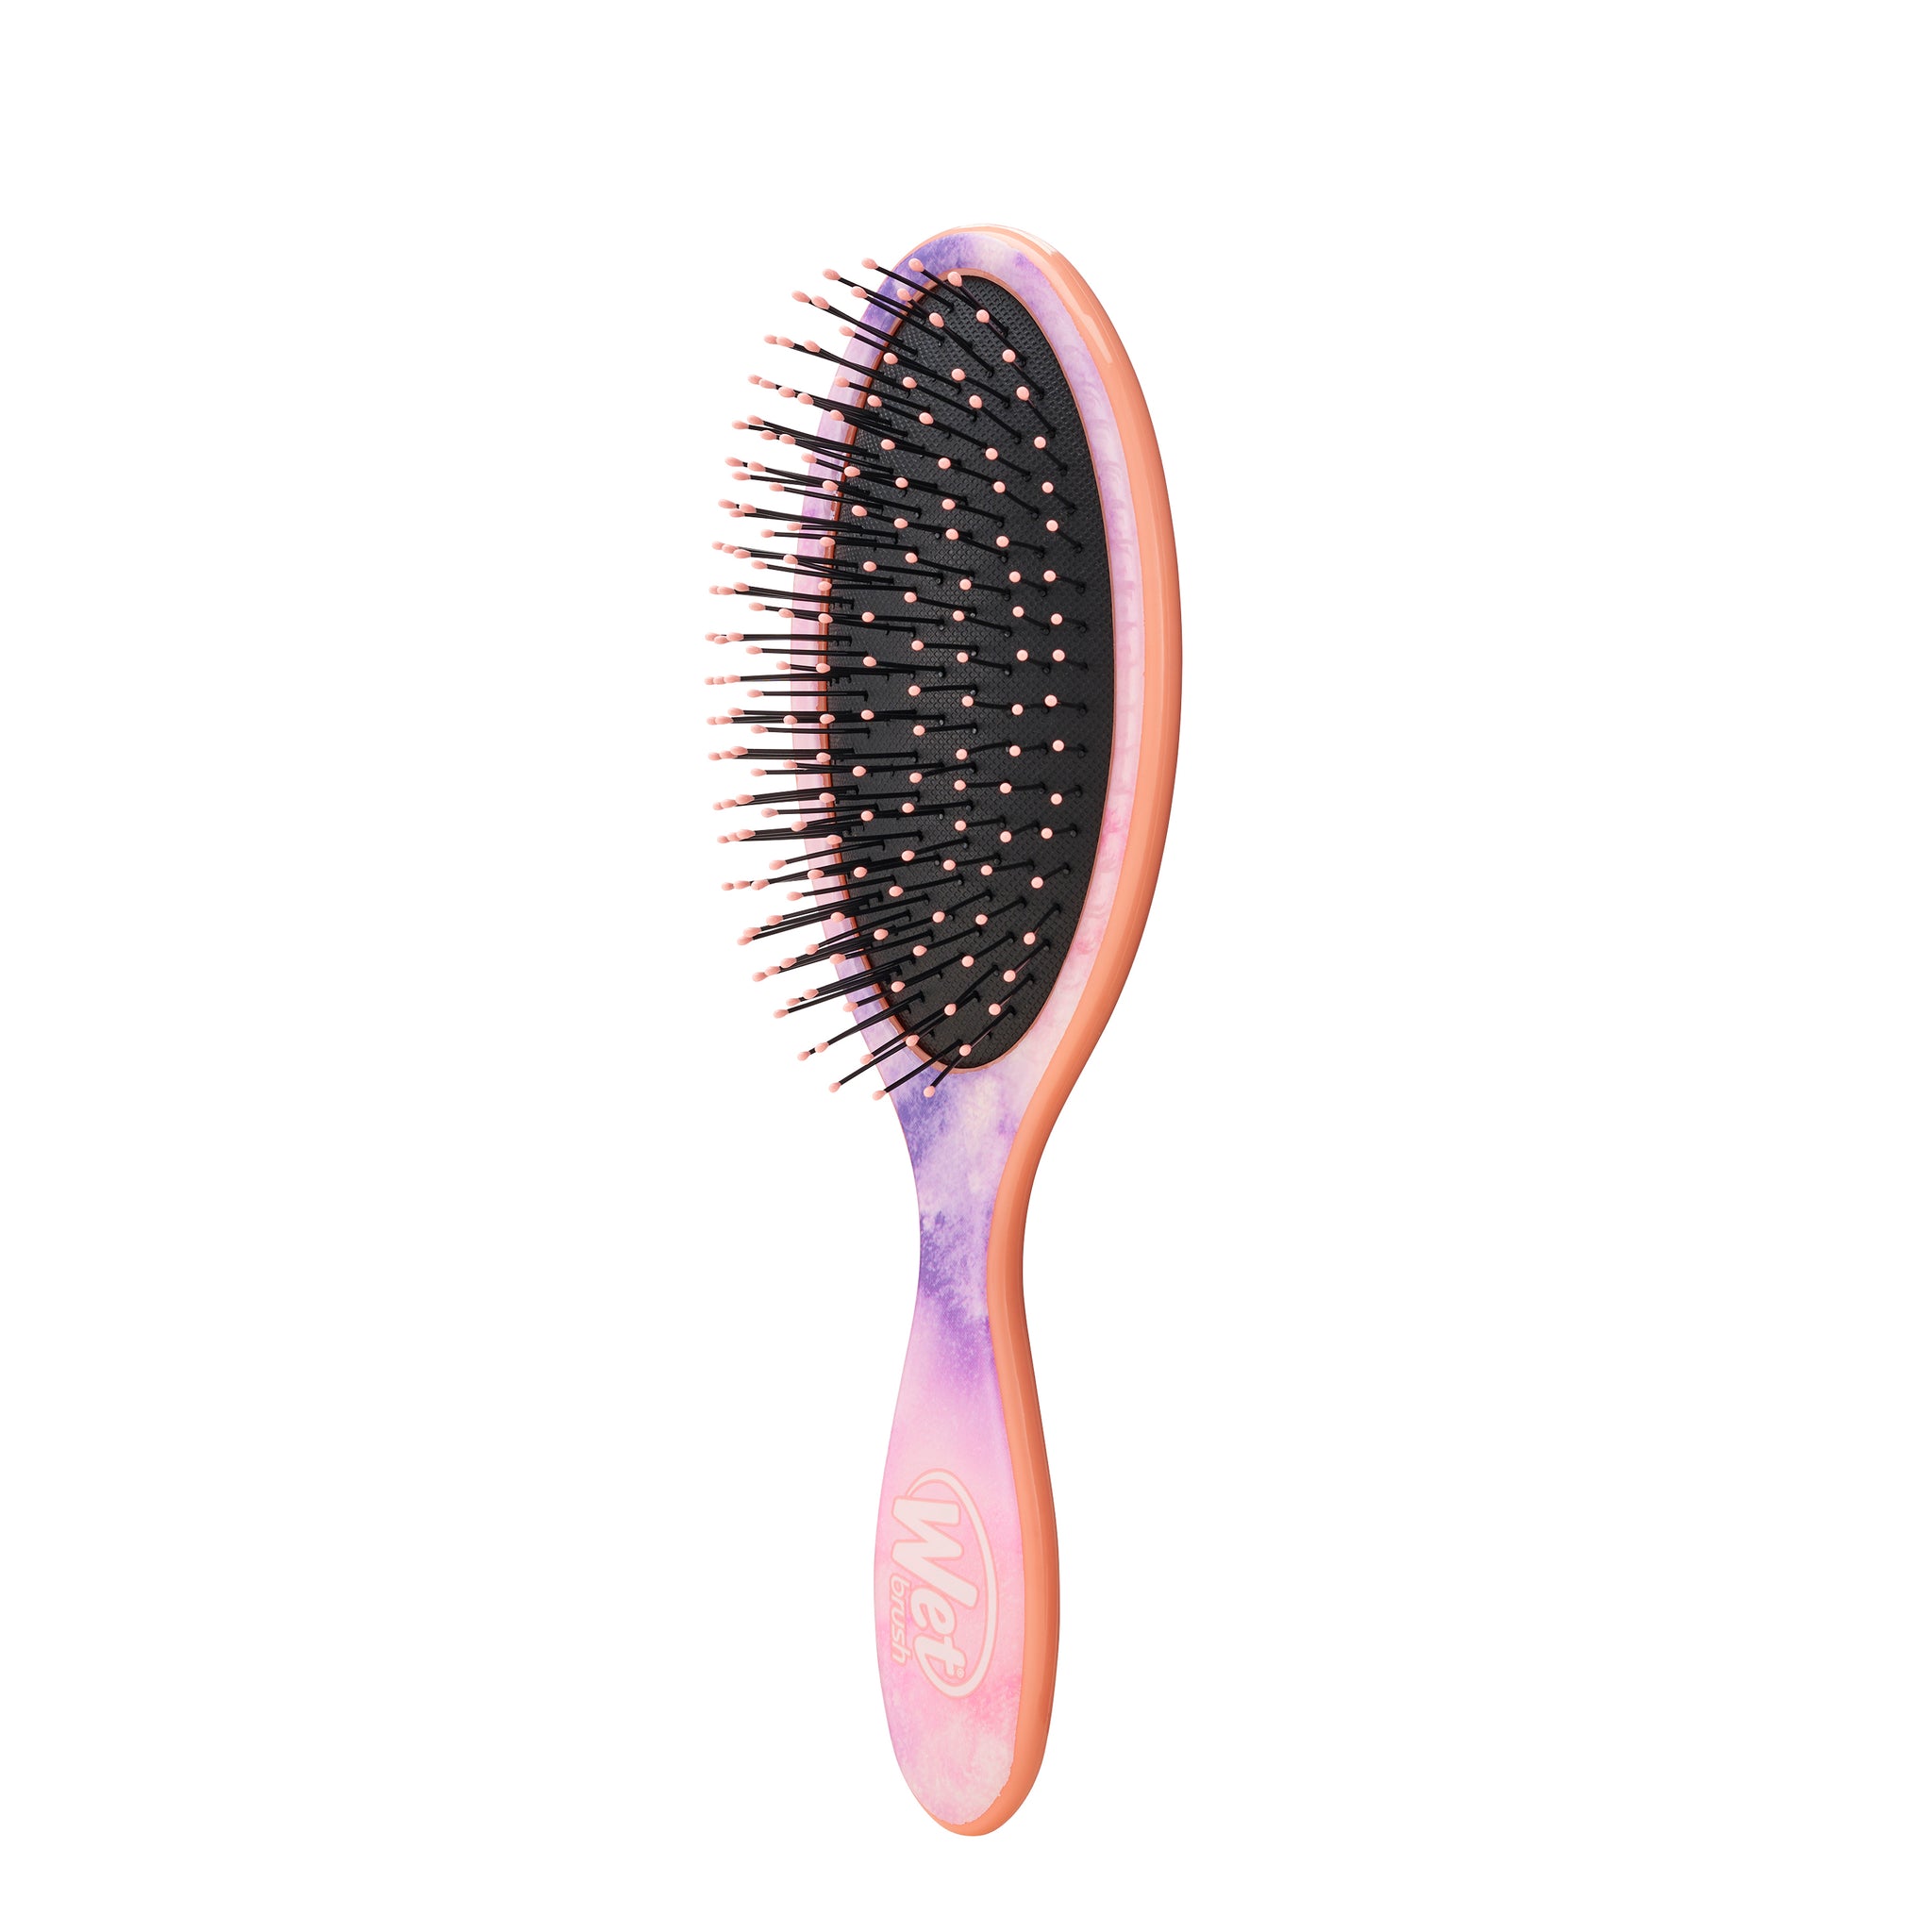 The Wet Brush Original Detangler Hair Brush Review